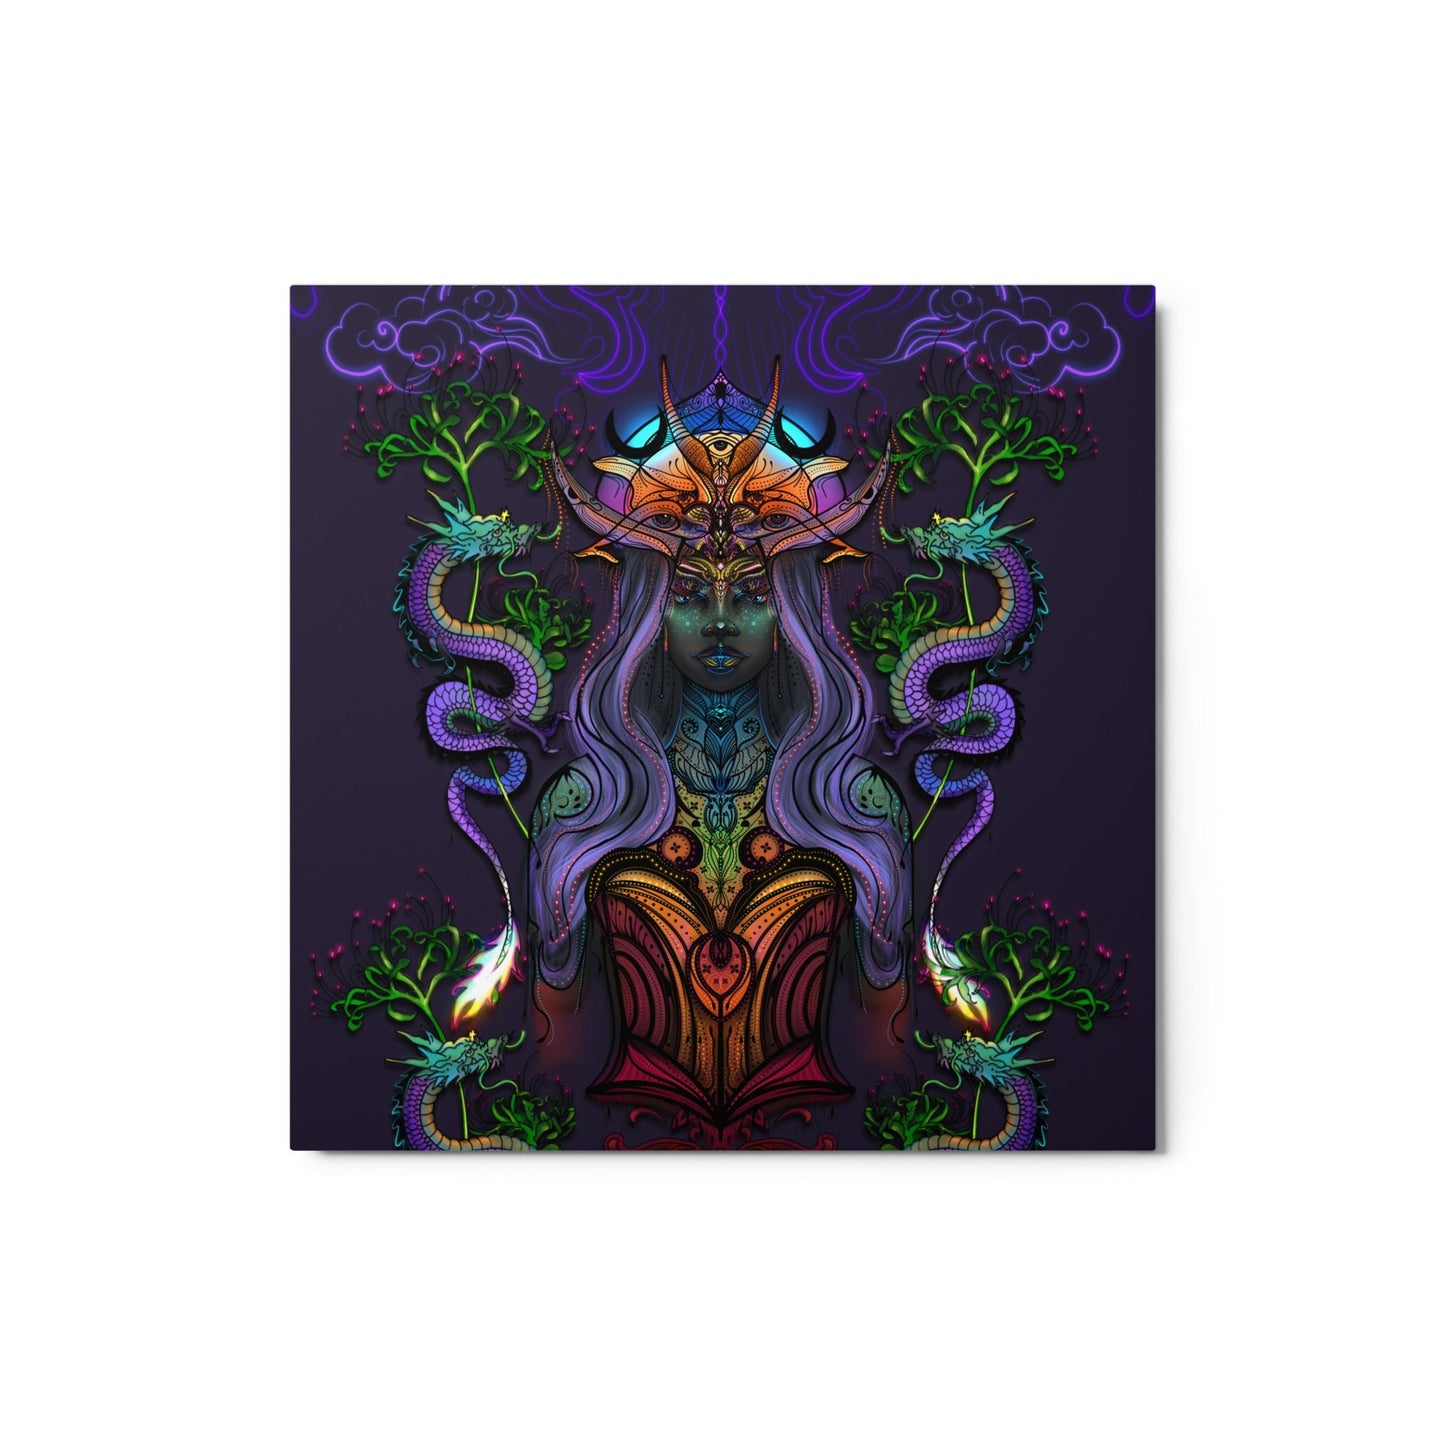 The Dragon Goddess - Metal print - 1111Arts